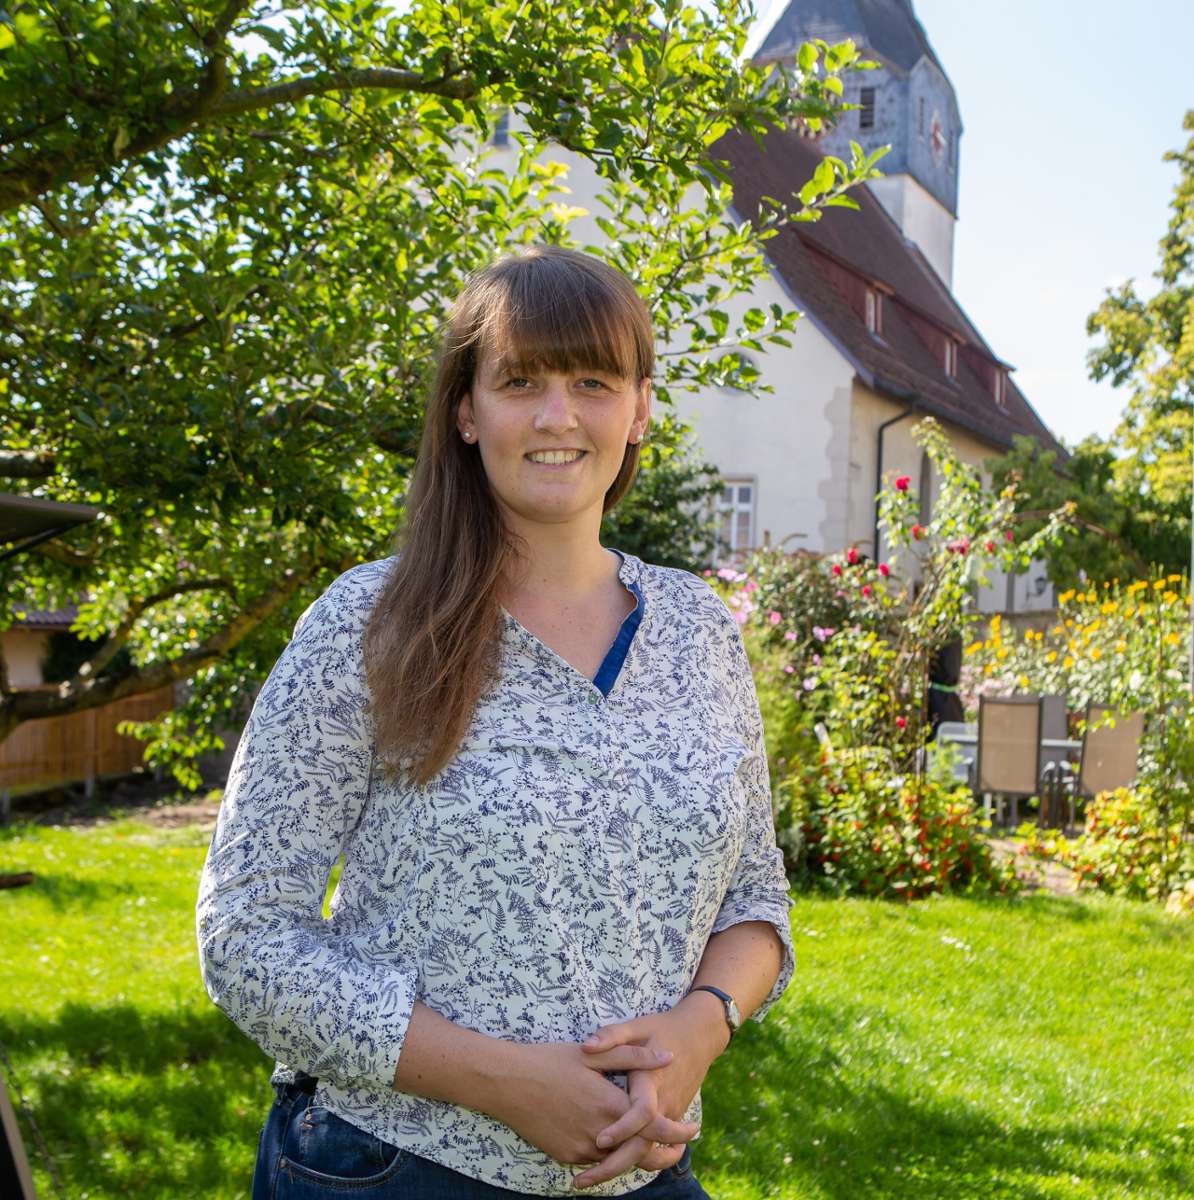 Jugendreferentin der Gesamtkirchengemeinde Sachsenheim: Jugendlichen eine Stimme geben